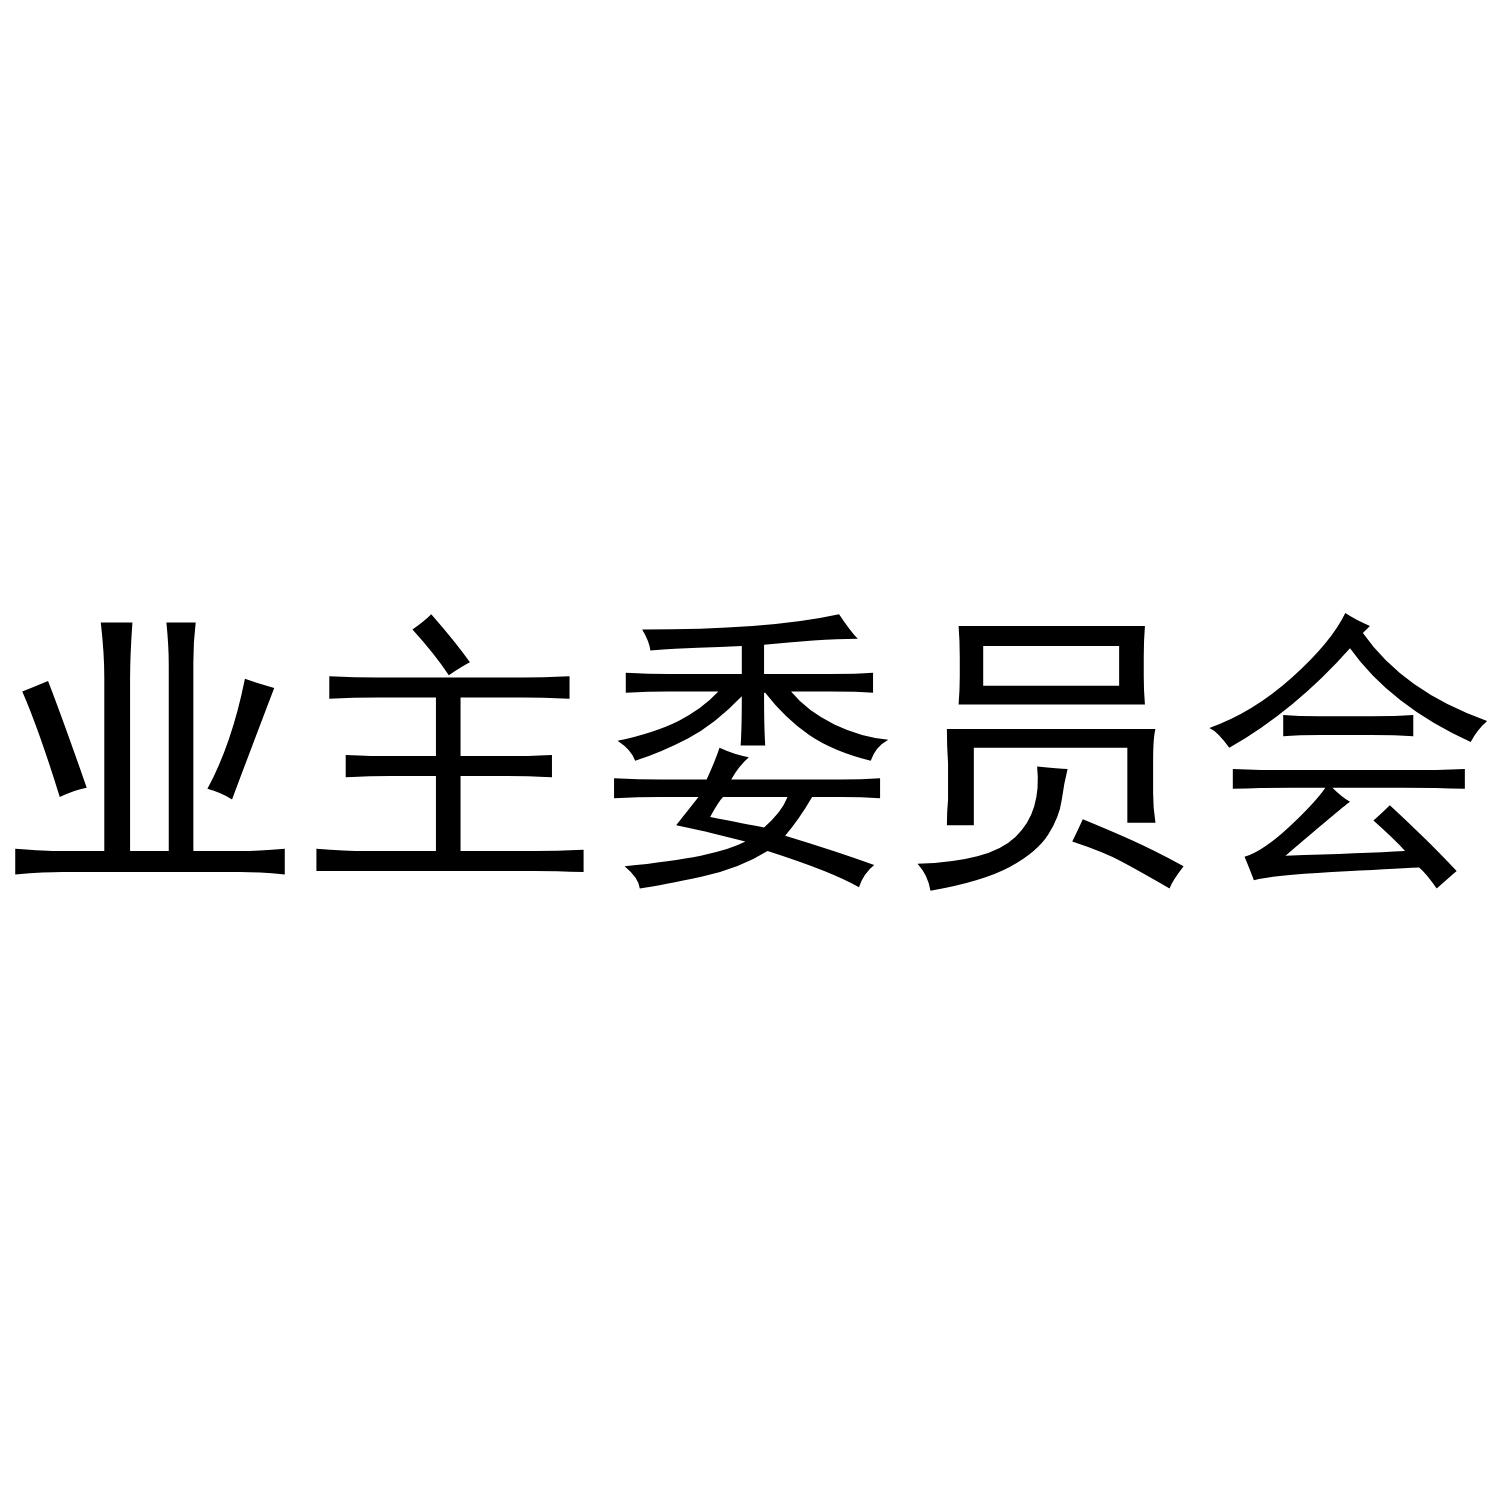 业委会logo图片